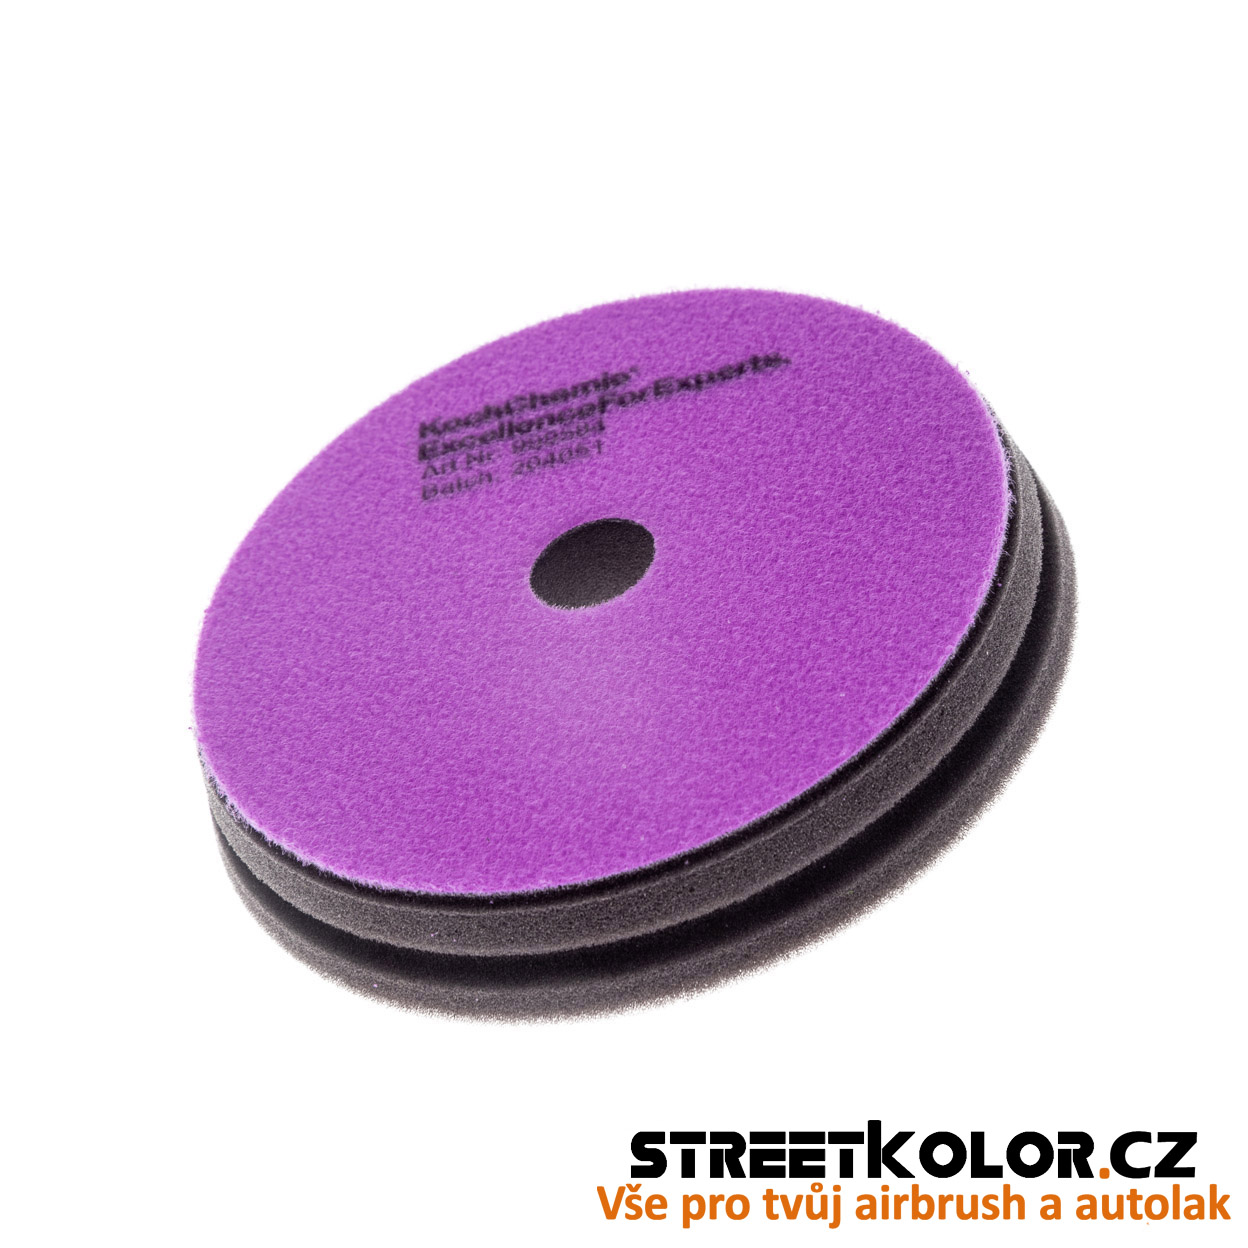 KochChemie Finálny antihologramový fialový leštiaci kotúč Micro Cut Pad 126x23mm